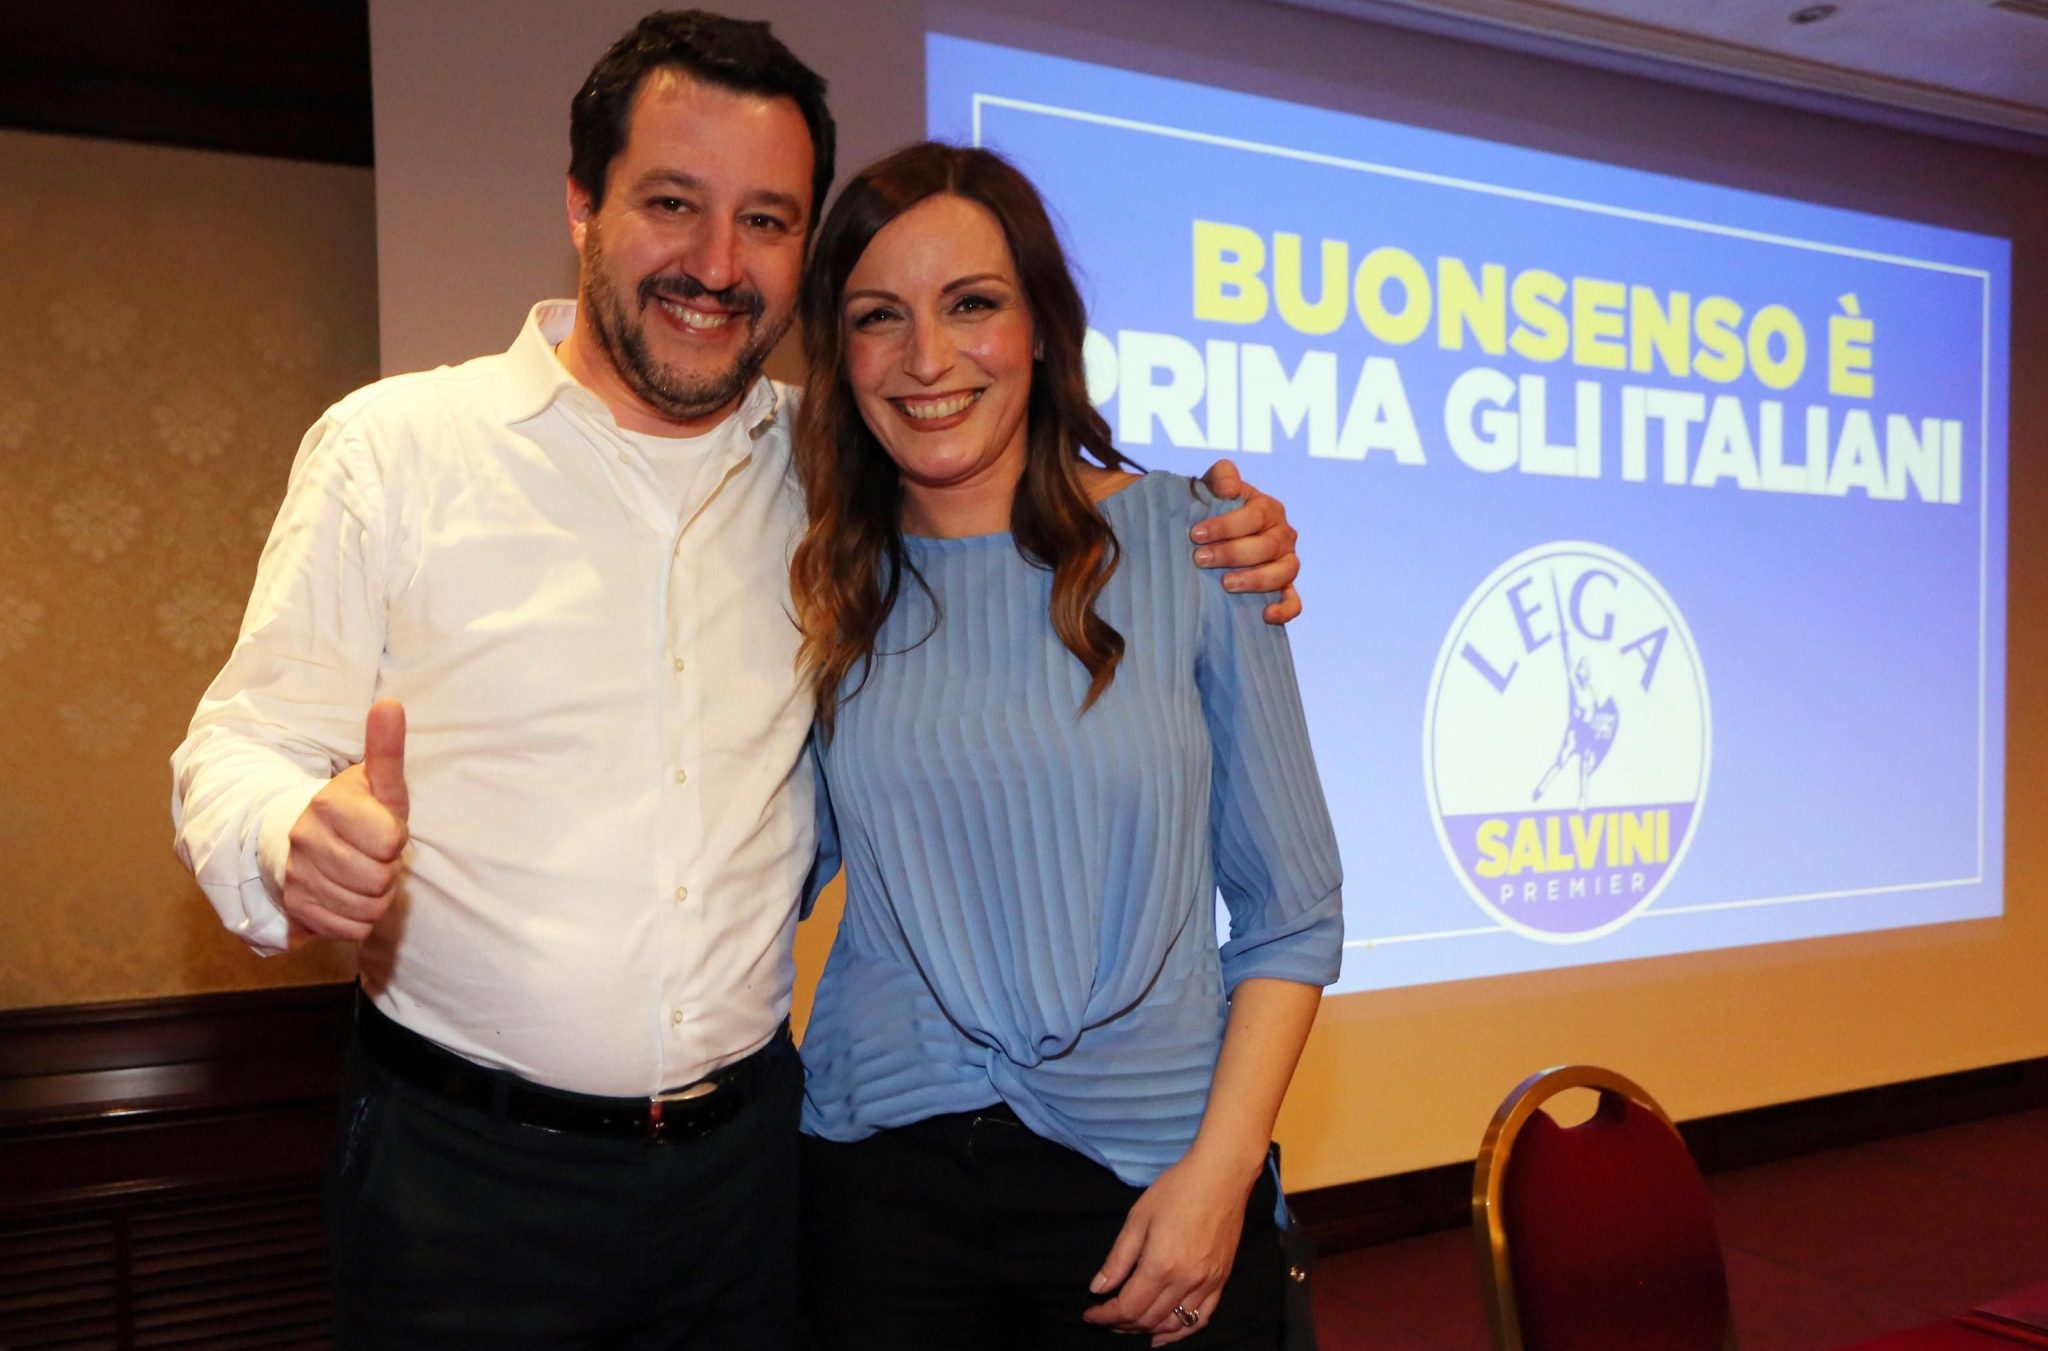 Il segretario federale della Lega Nord e candidato premier, Matteo Salvini, con la senatrice Lucia Borgonzoni